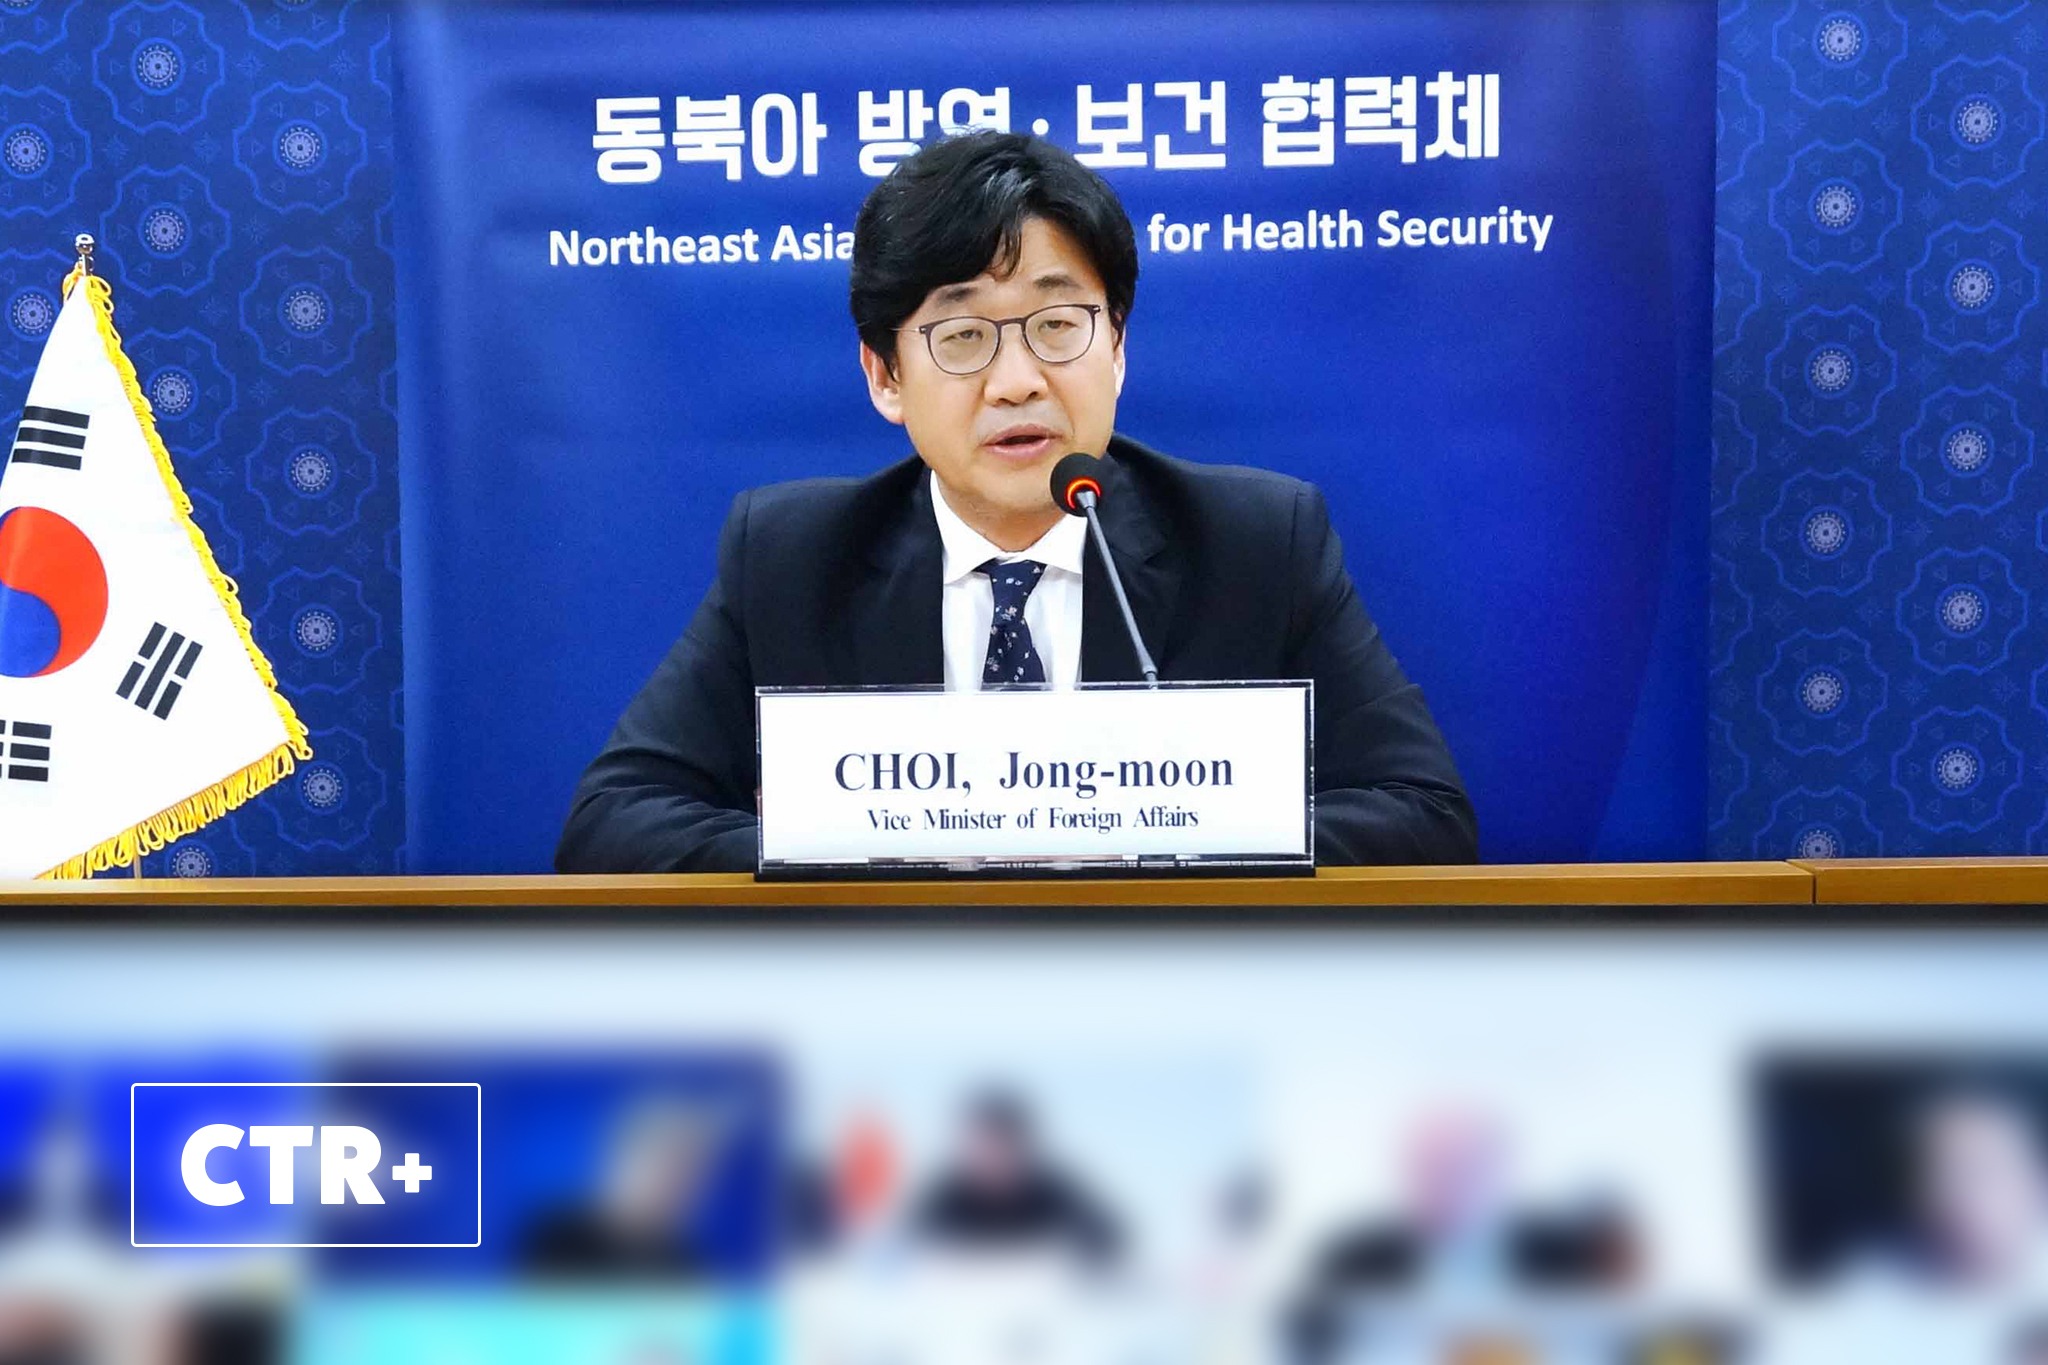 [CTR Plus] Inter-Korean Cooperation Through NEAPHI